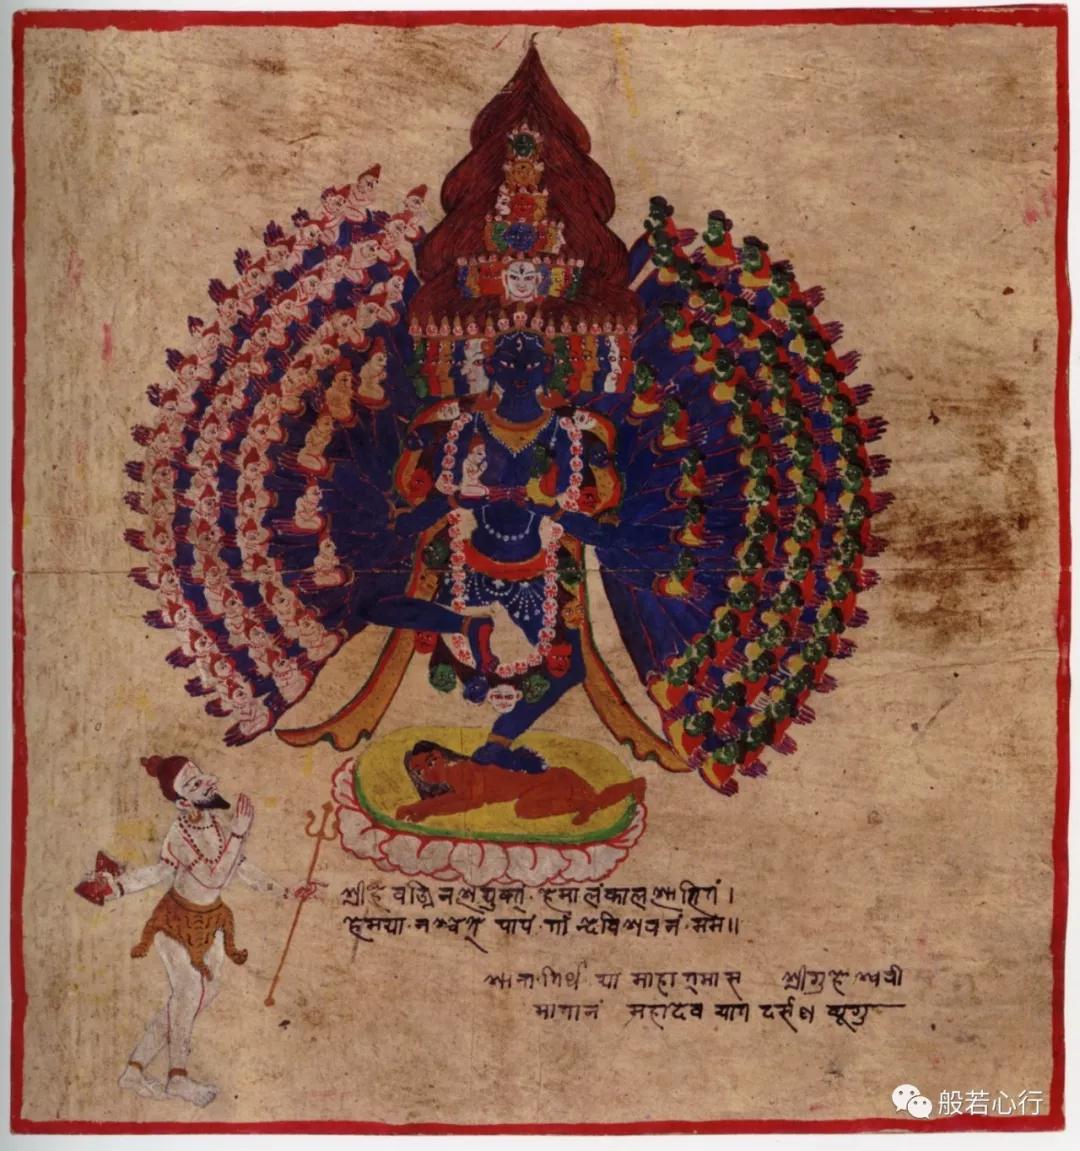 胜乐金刚的六十四形态的仪轨手稿(全)—《极乐之轮:佛教冥想艺术》